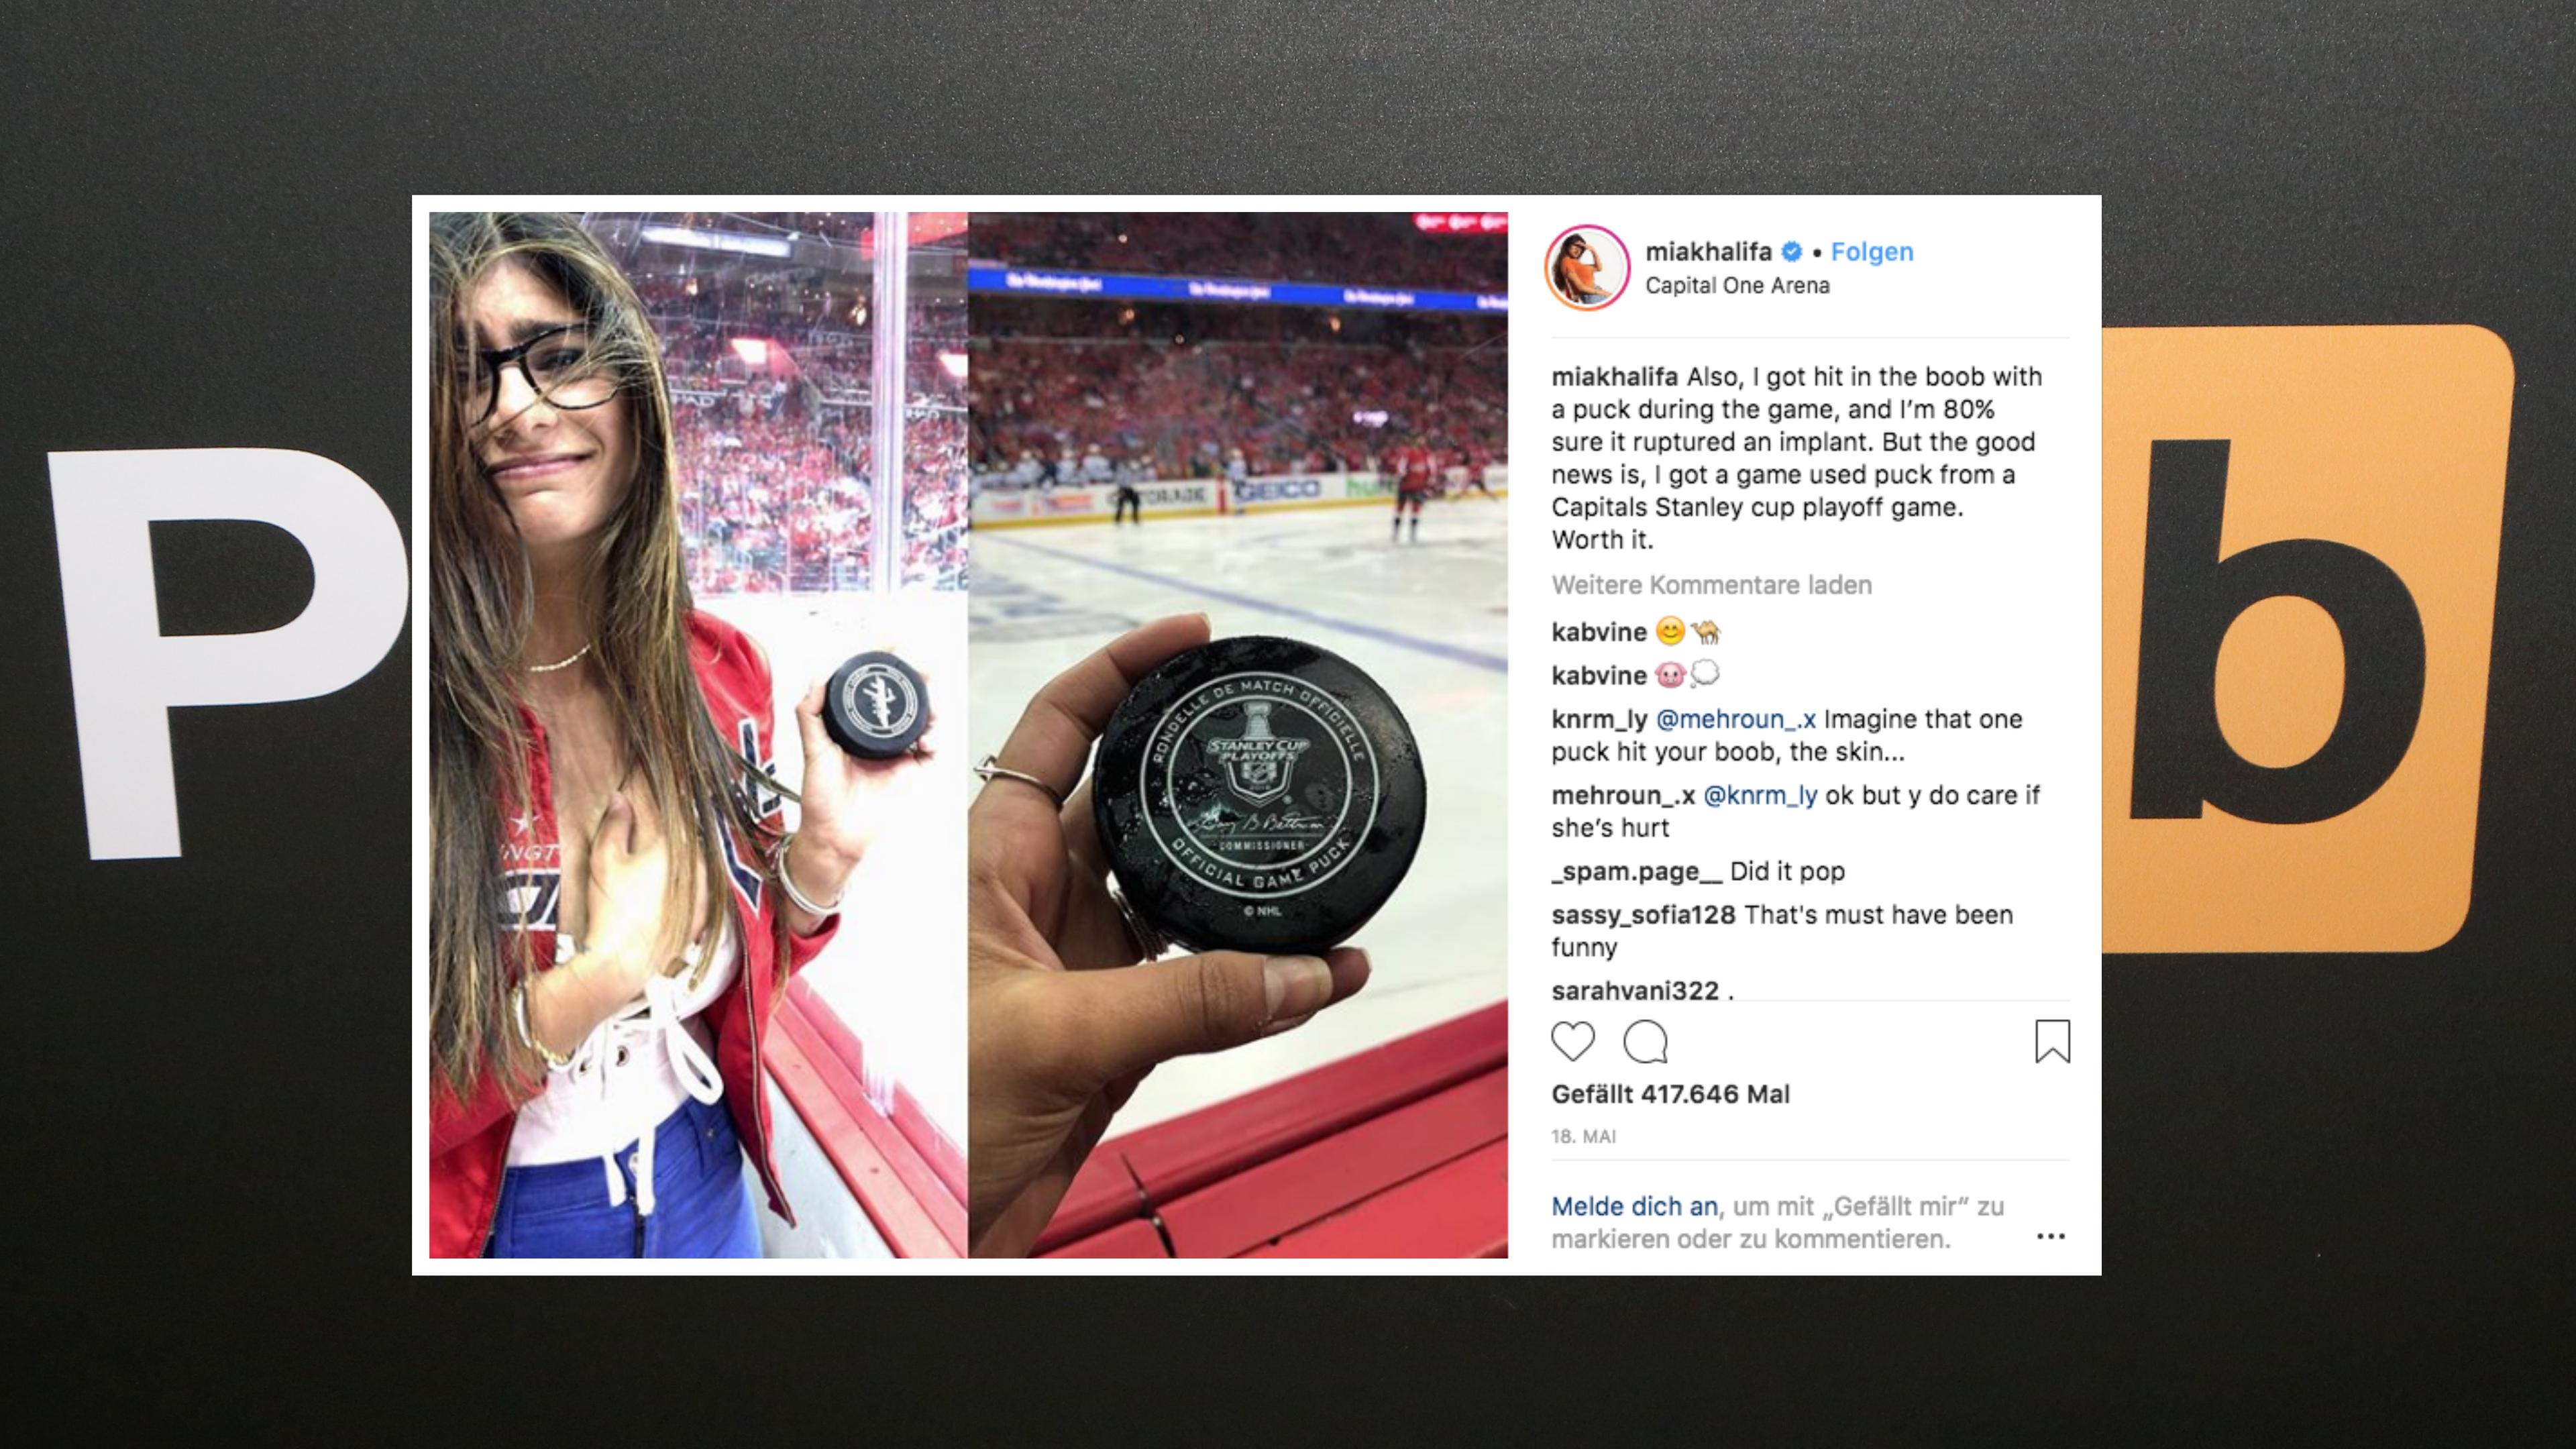 Nach dem Unfall präsentierte Mia Khalifa das Unglücksteil auf Instagram